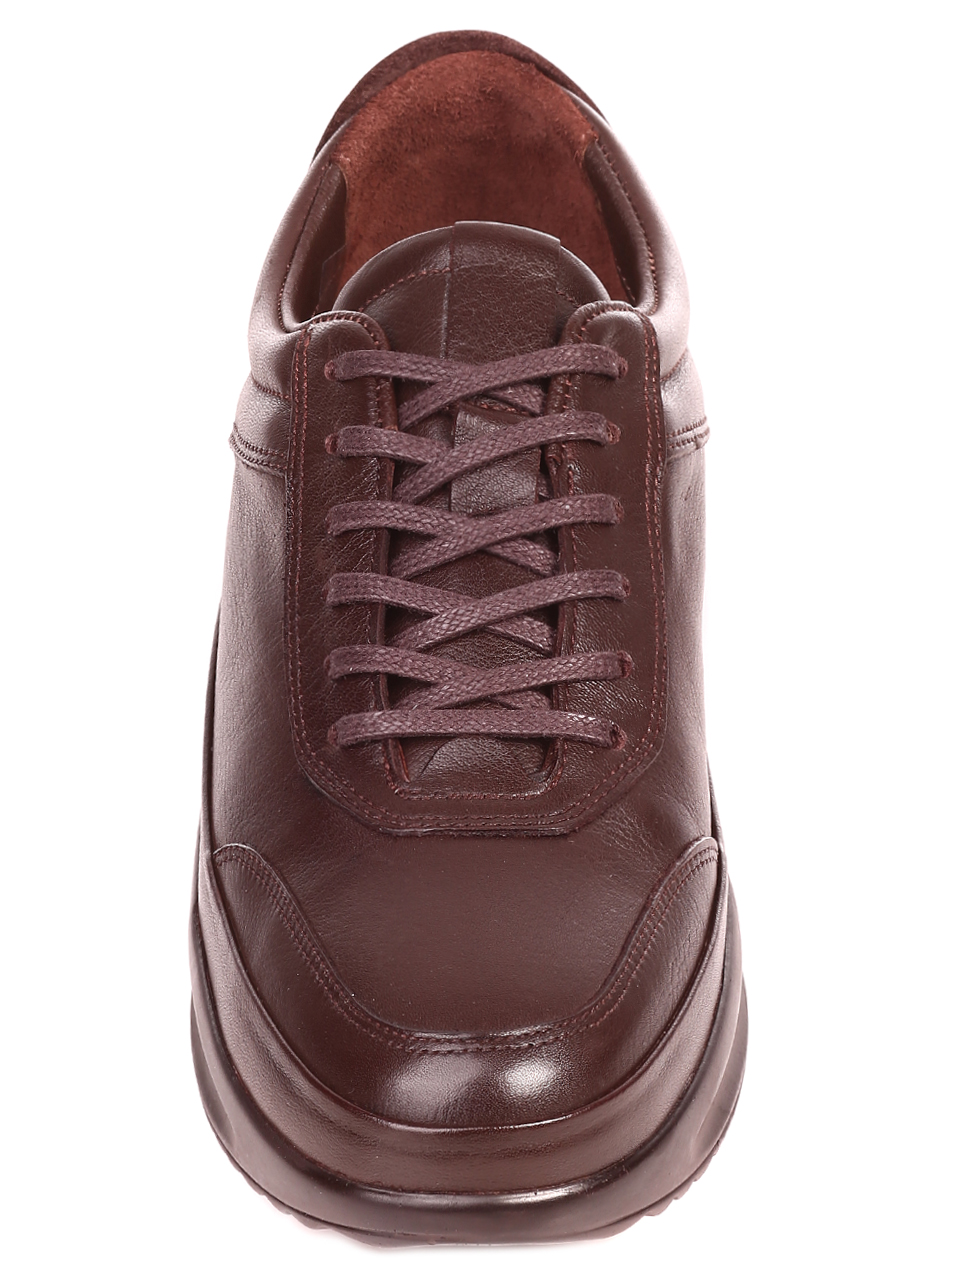 Ежедневни мъжки обувки от естествена кожа 7AT-21849 brown